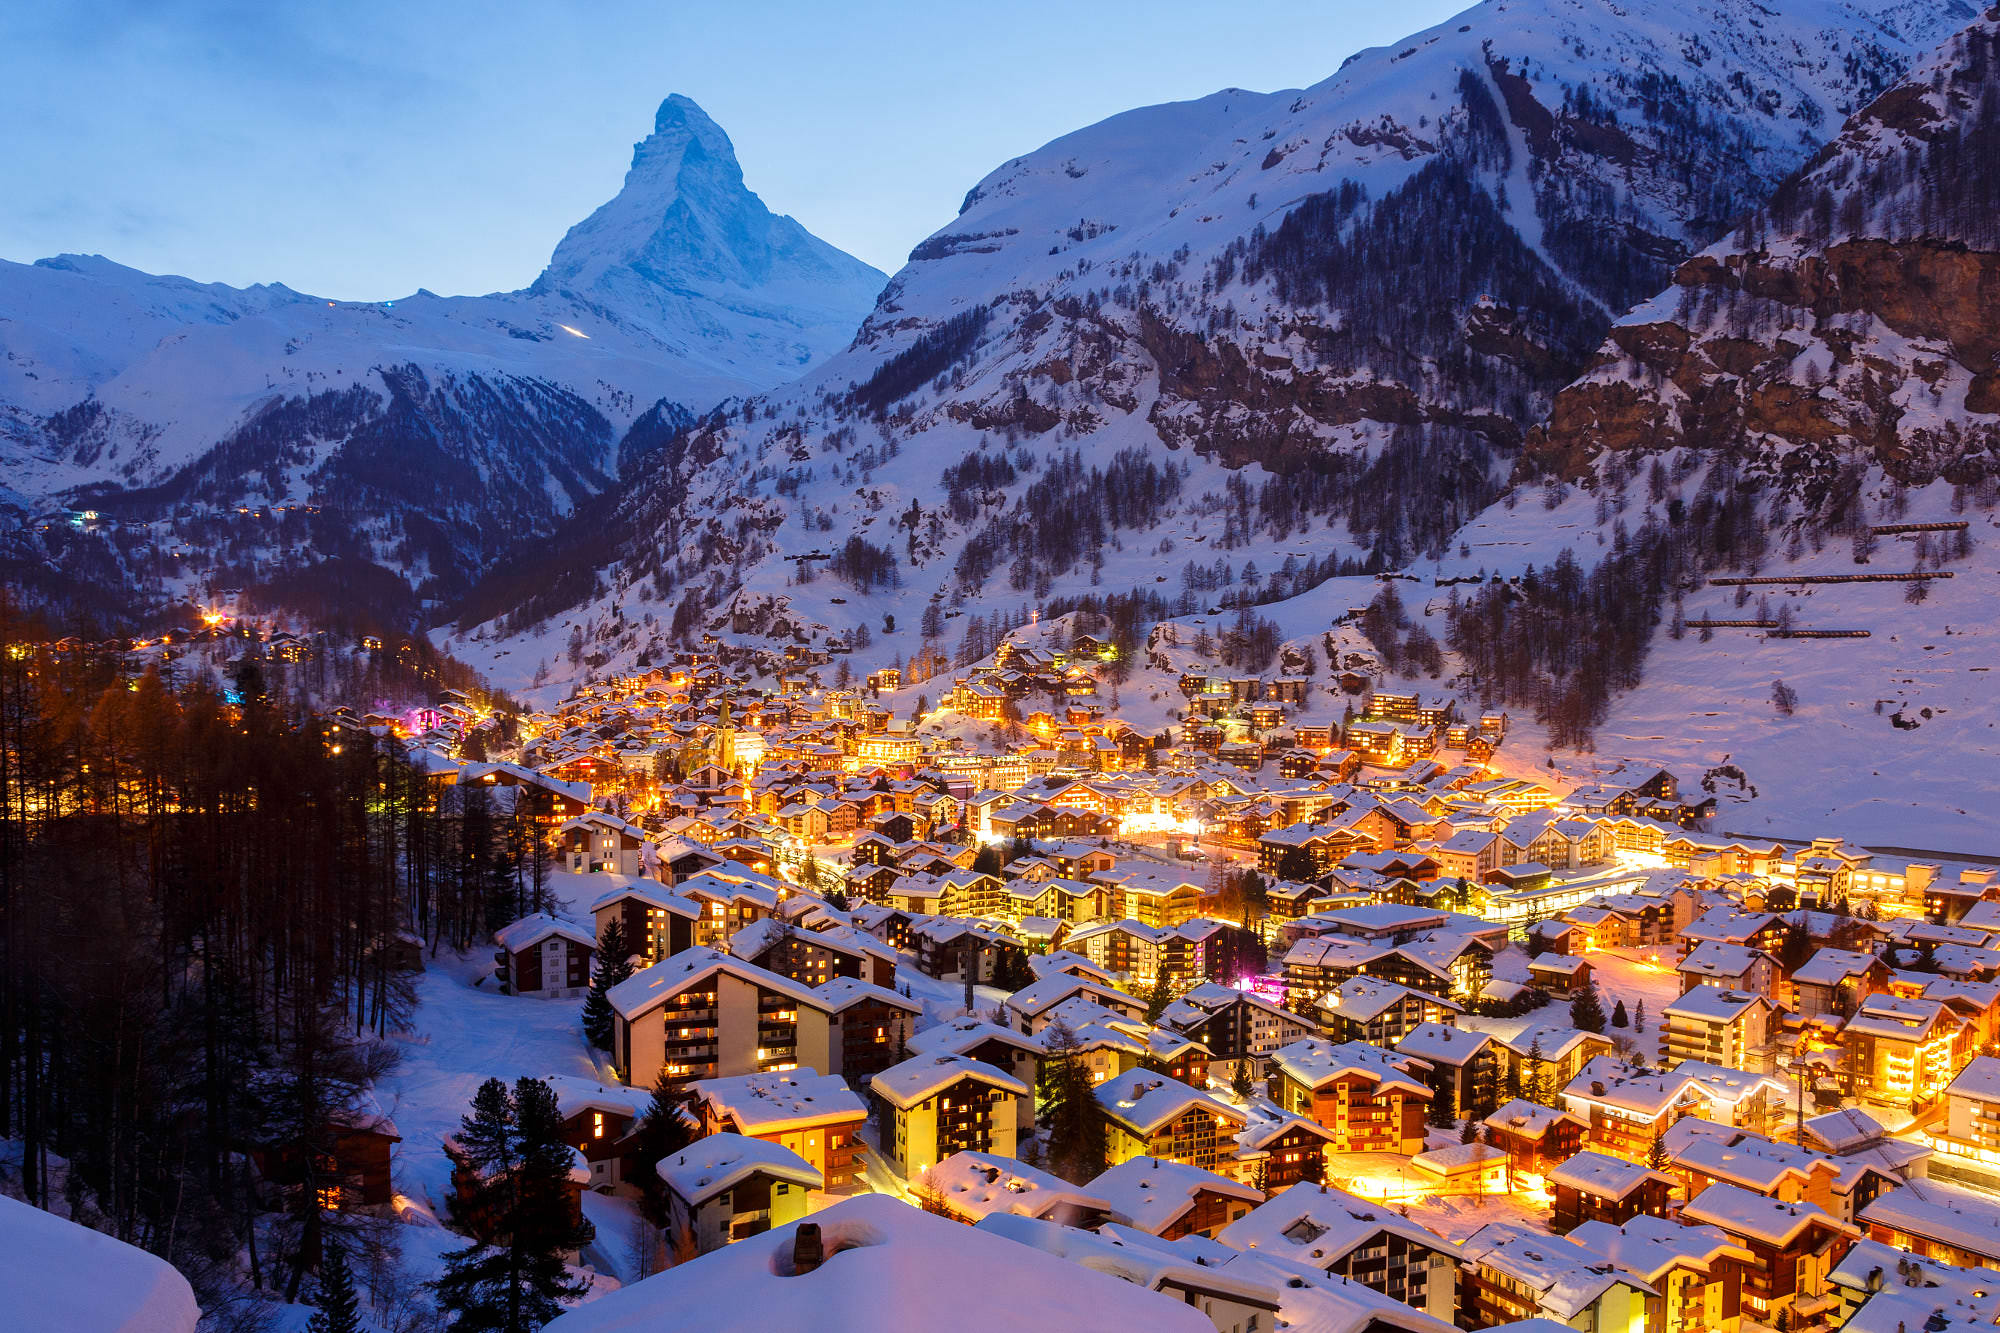 Du lịch năm châu: Làng Zermatt Thụy Sĩ - điểm hấp dẫn chìm trong tuyết trắng